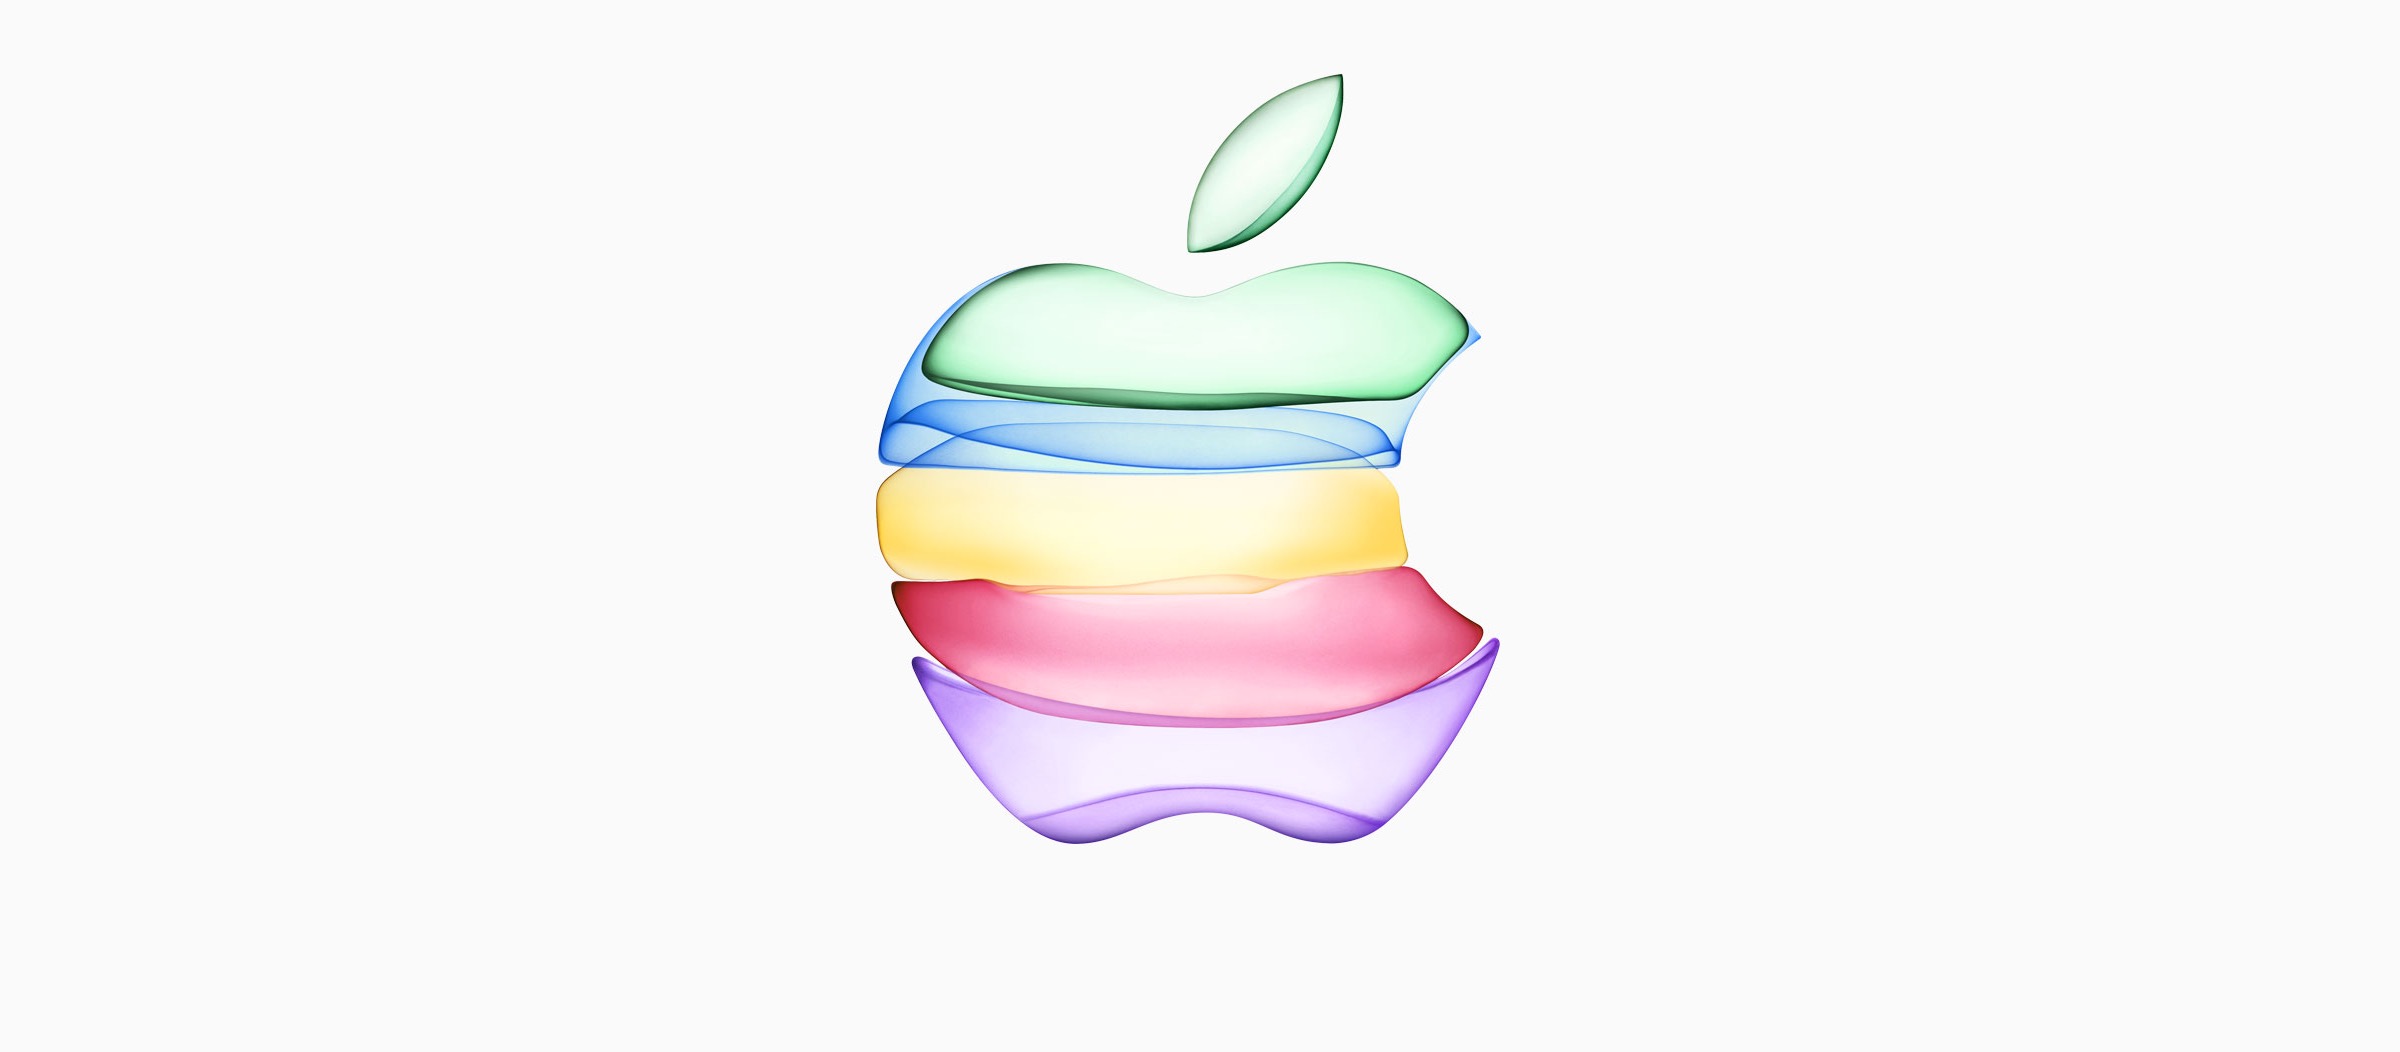 Apple organisera sa prochaine conférence le 20 avril